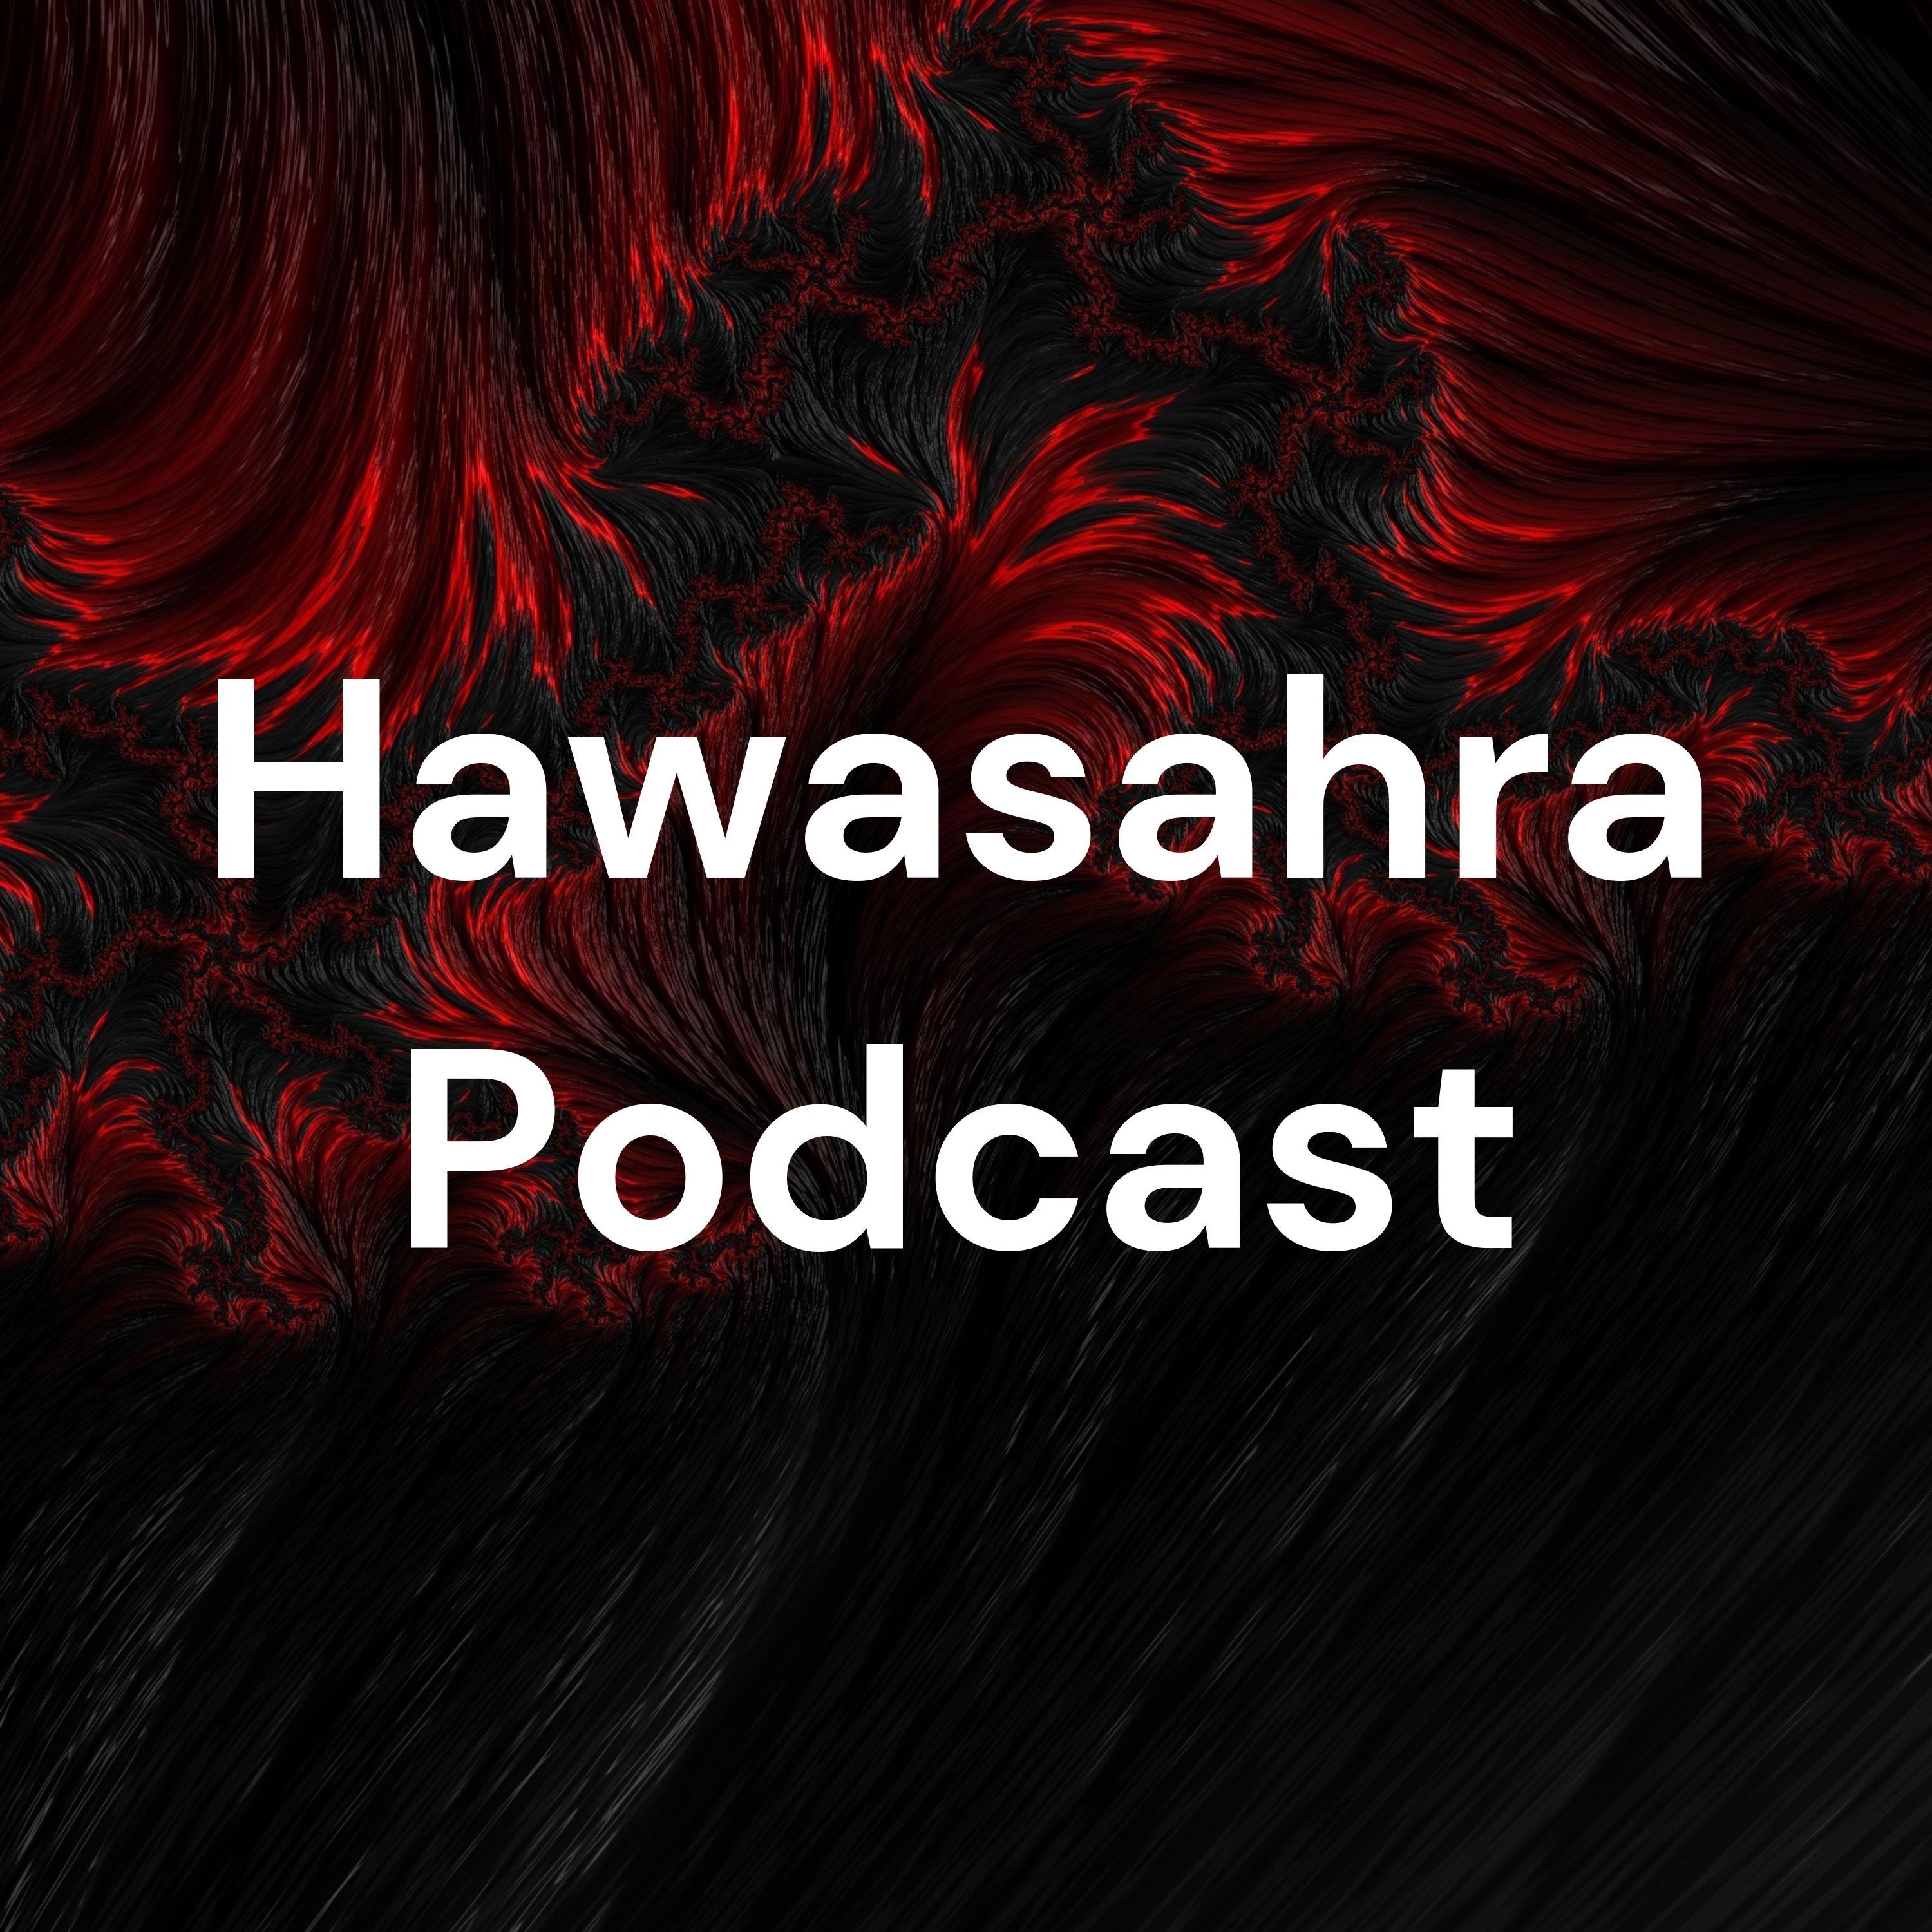 Hawasahra Podcast